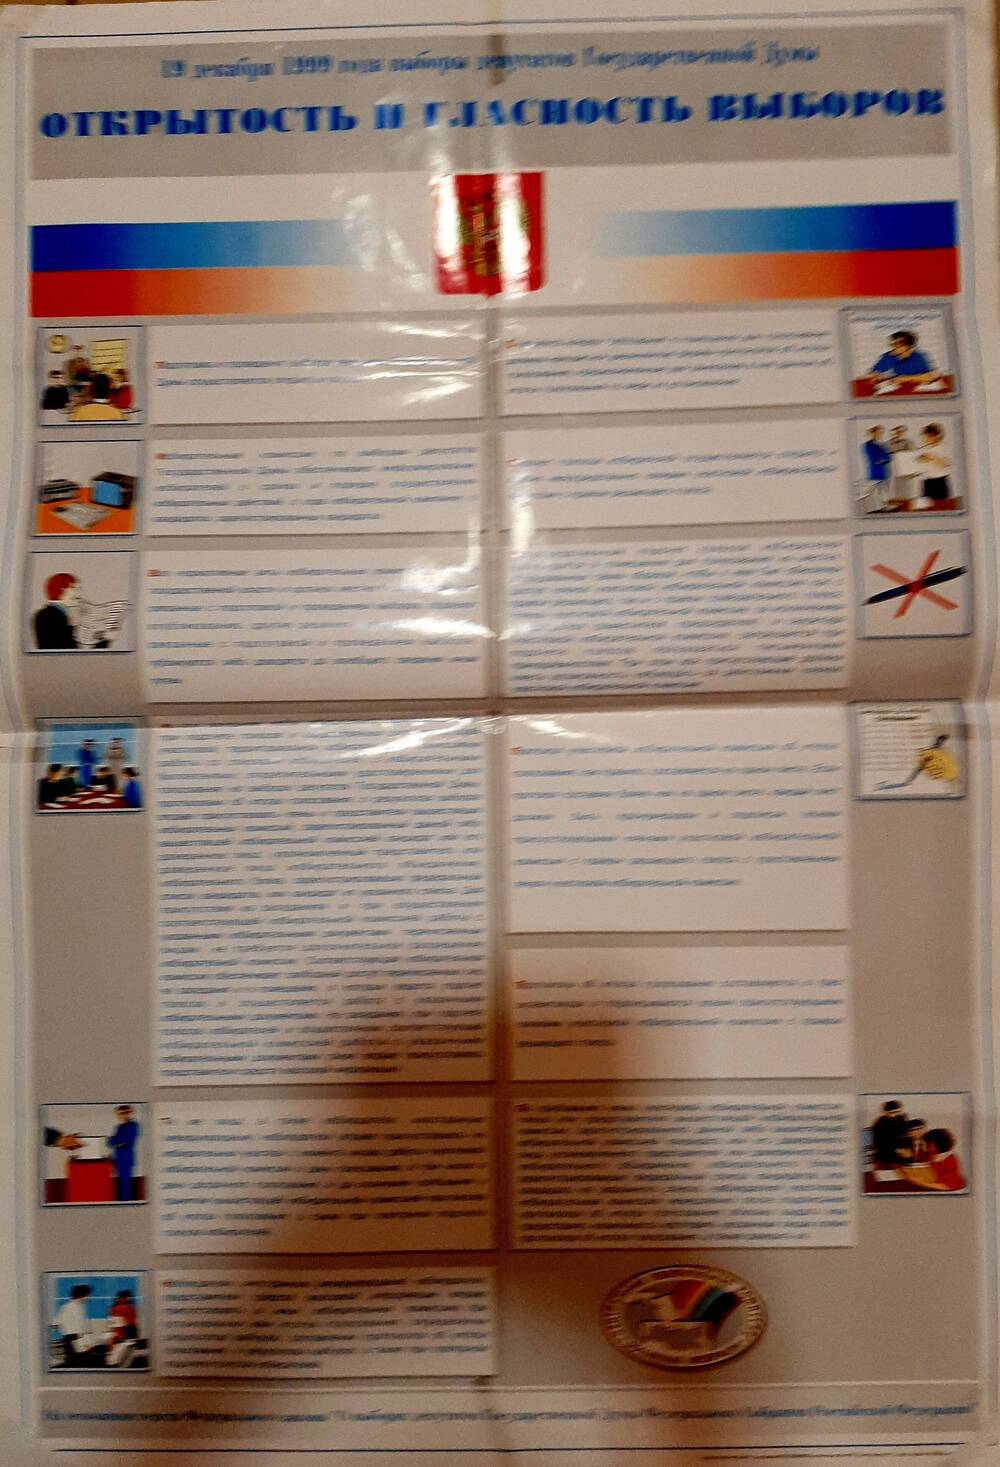 Плакат 19 декабря 1999 года - выборы депутатов Государственной Думы - открытость и гласность выборов.